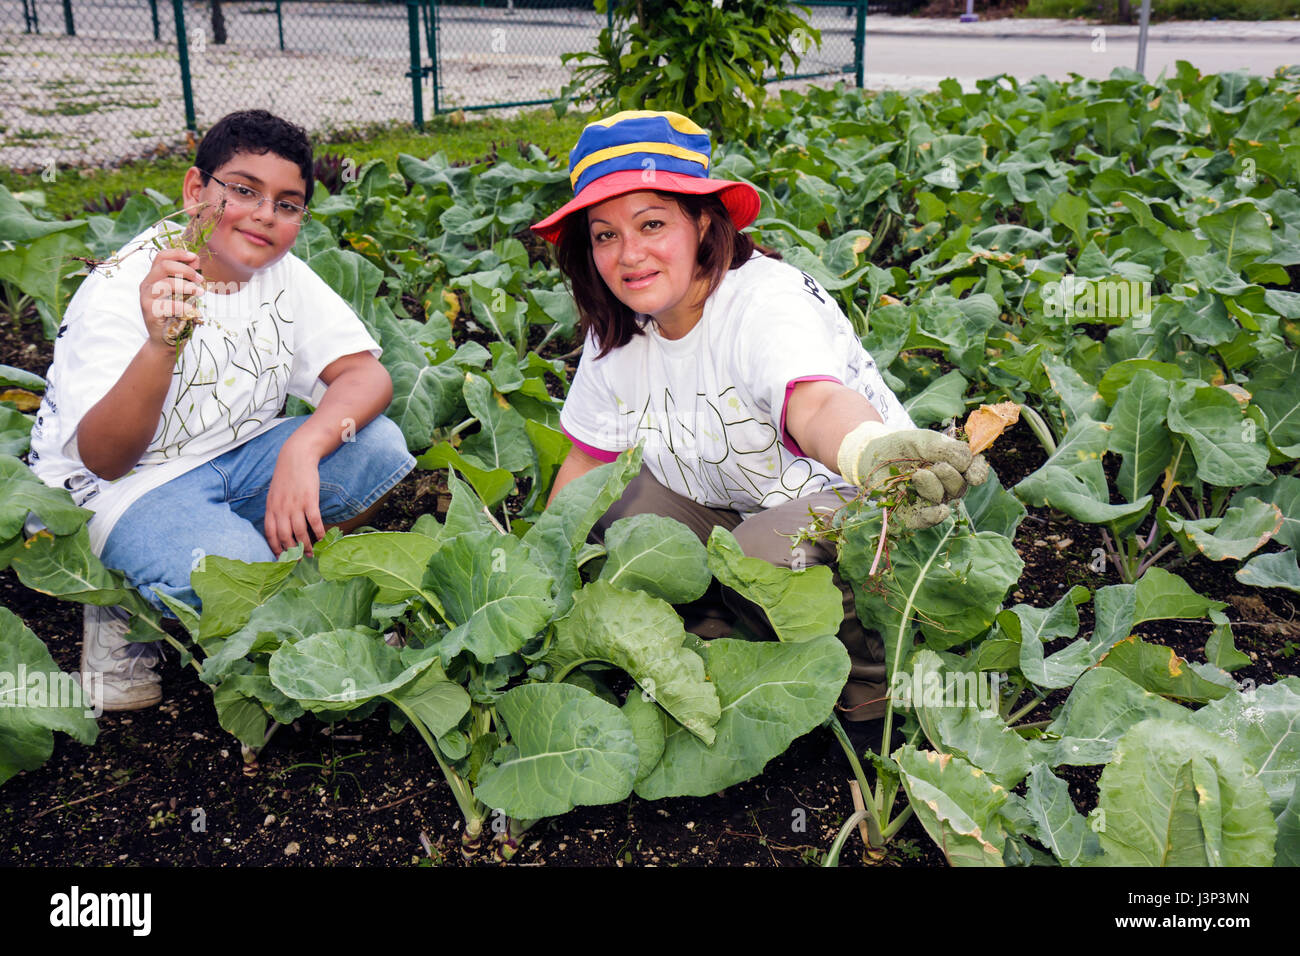 Miami Florida, Overtown, Freiwillige Freiwillige ehrenamtlich arbeiten Arbeiter, arbeiten zusammen helfen, Hand, Gemüse, Gemüse, Garten, Gartenarbeit, Stockfoto